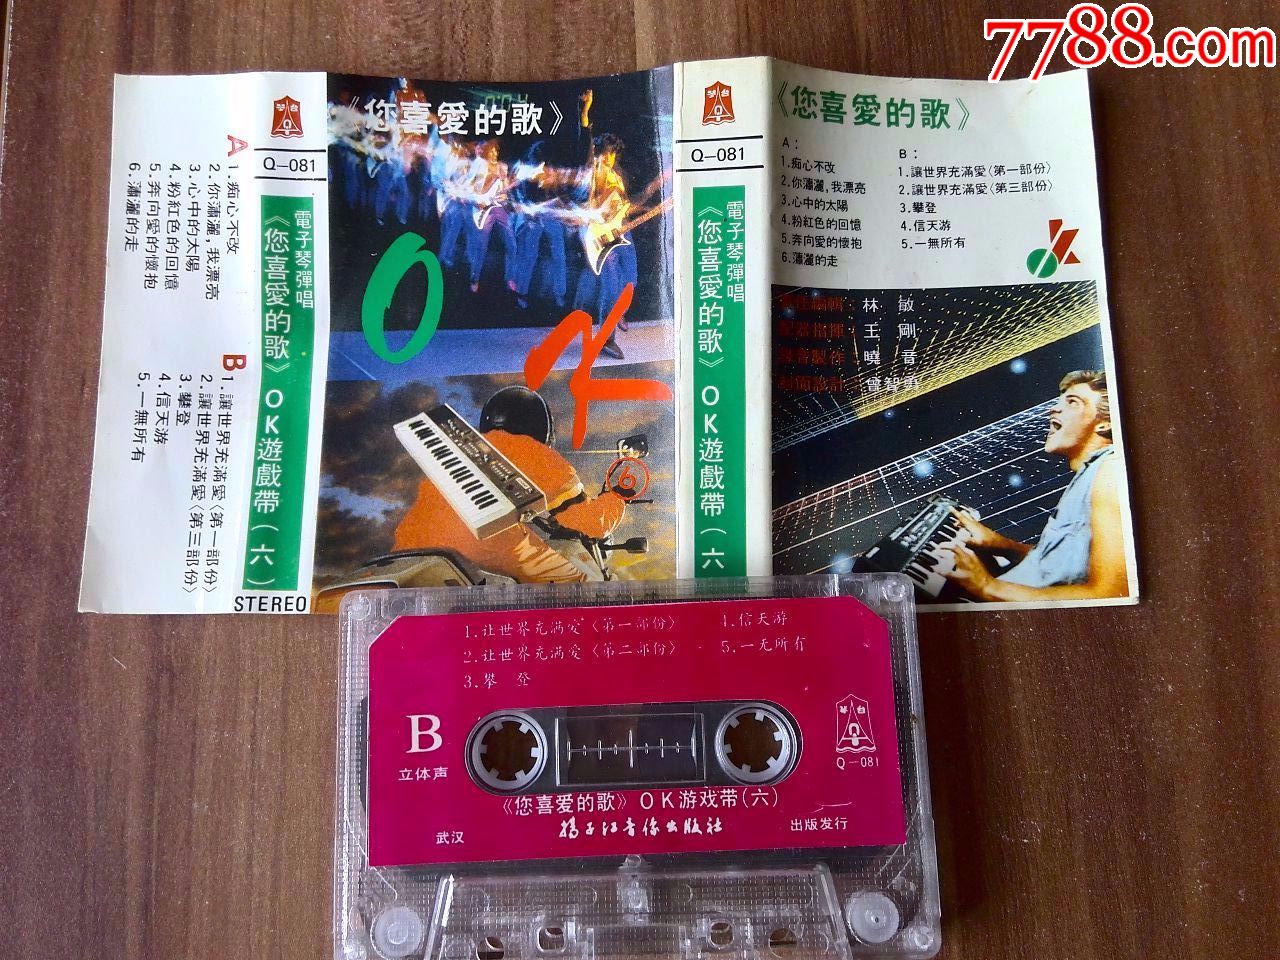 电子琴弹唱歌曲专辑《您喜爱的歌(六)》扬子江音像出版社出版